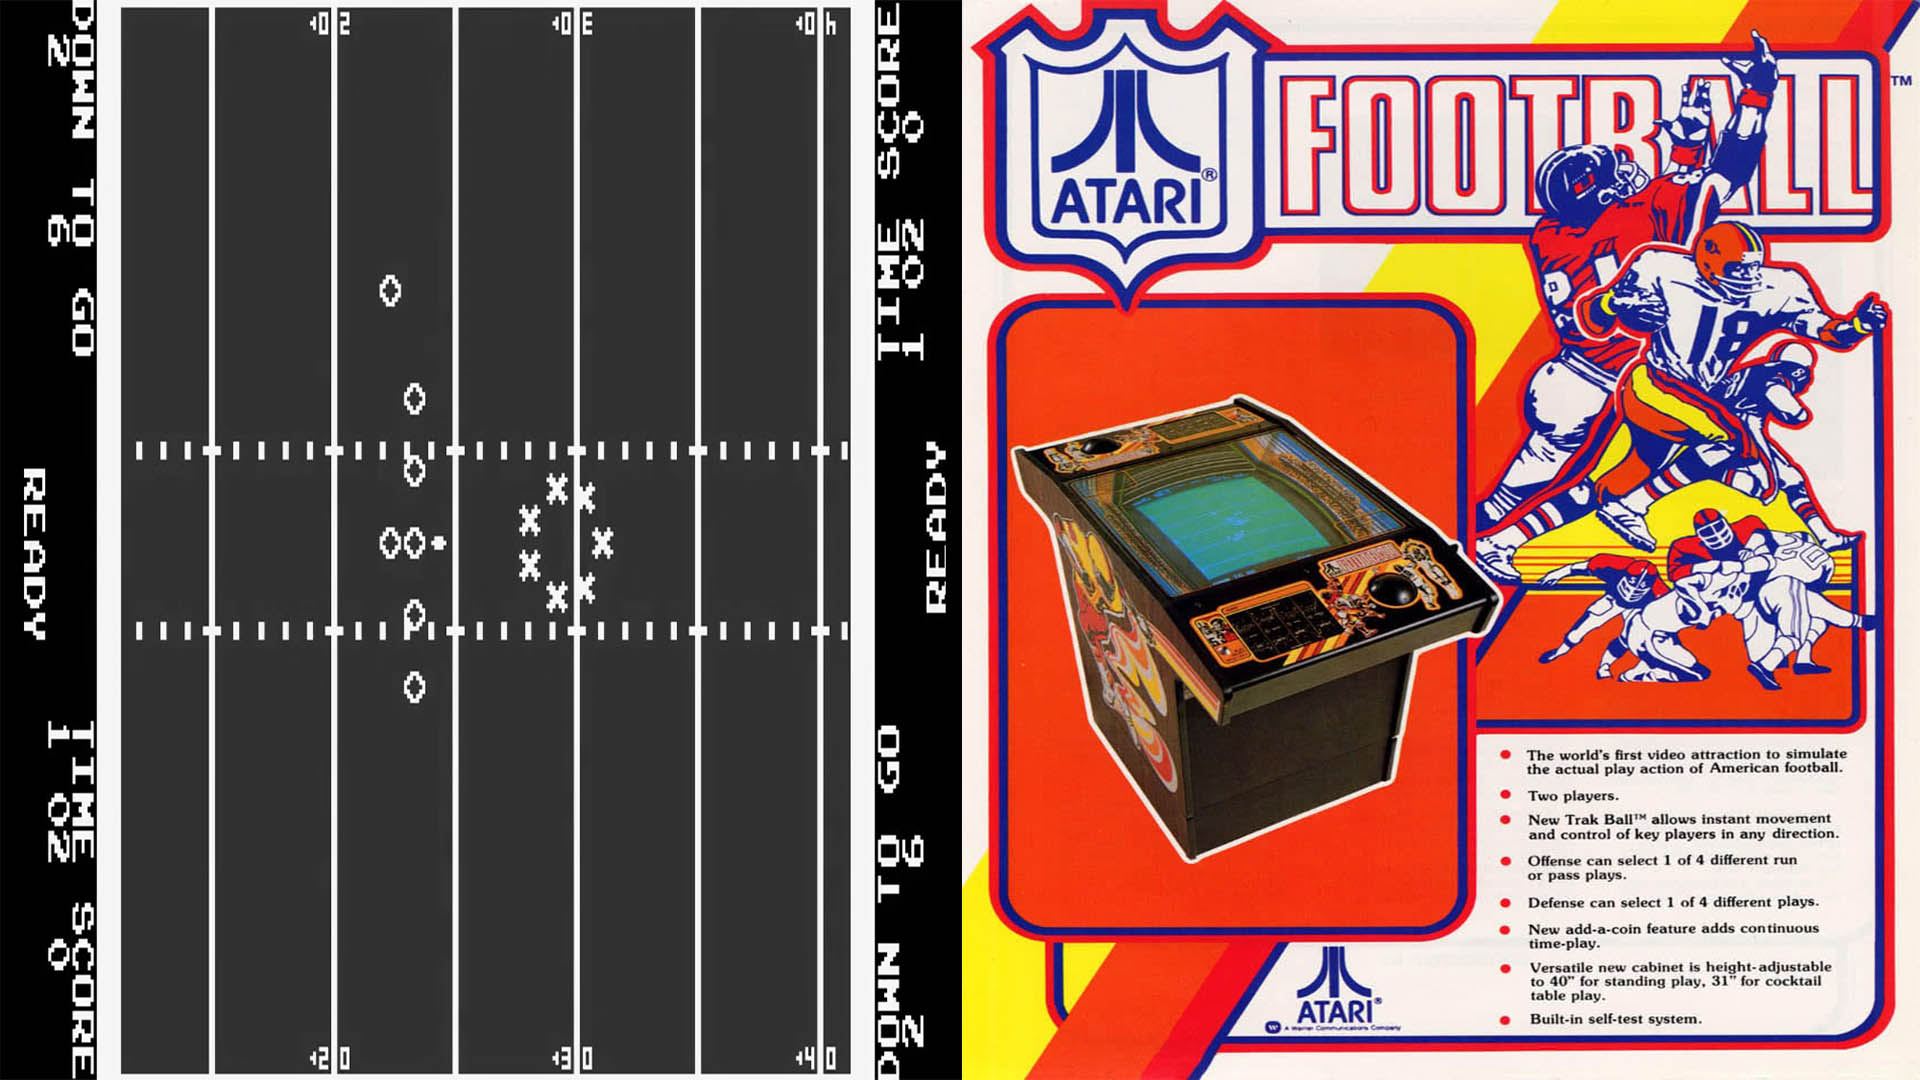 بازی Atari Football و دستگاه آرکید آن